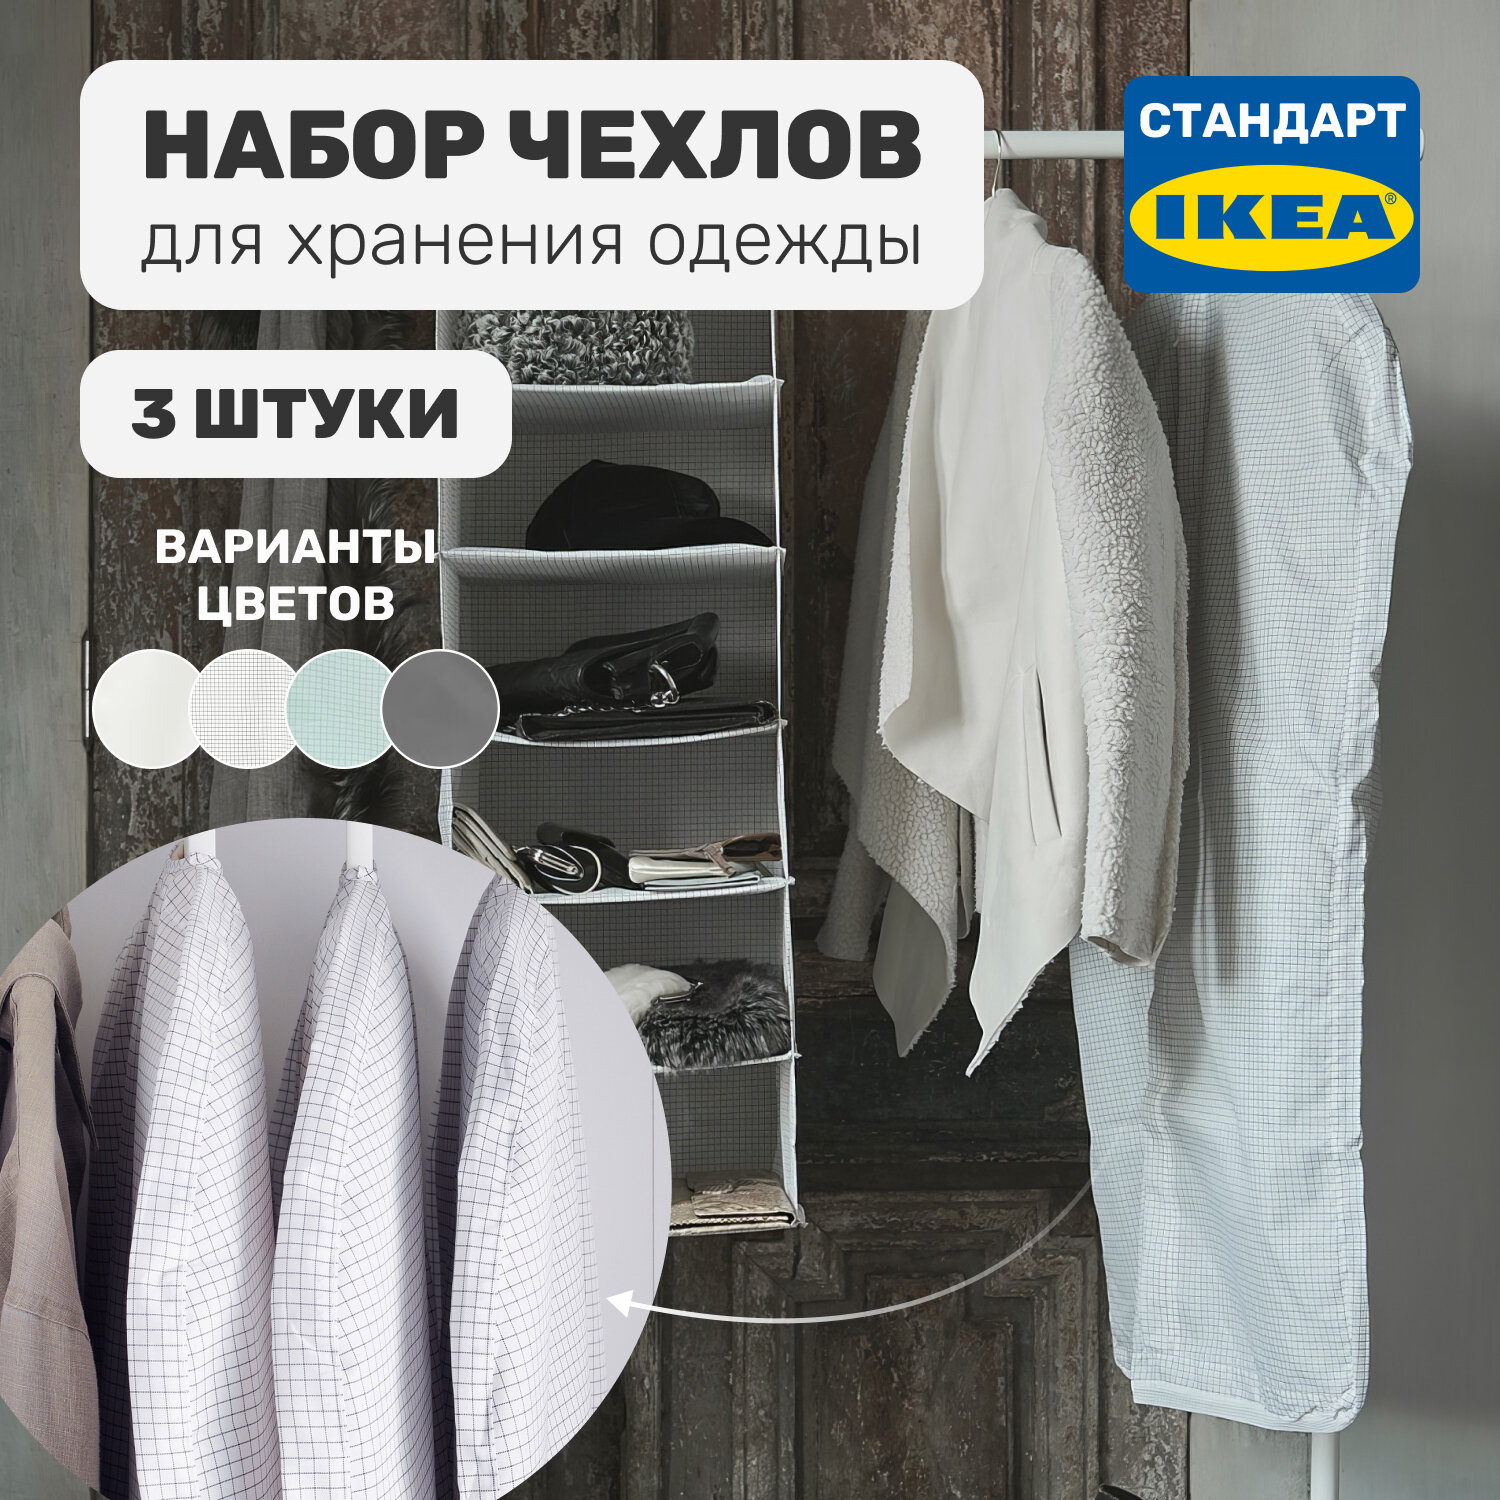 Набор чехлов для хранения одежды Leset home 3 шт стандарт икеа белый/серый